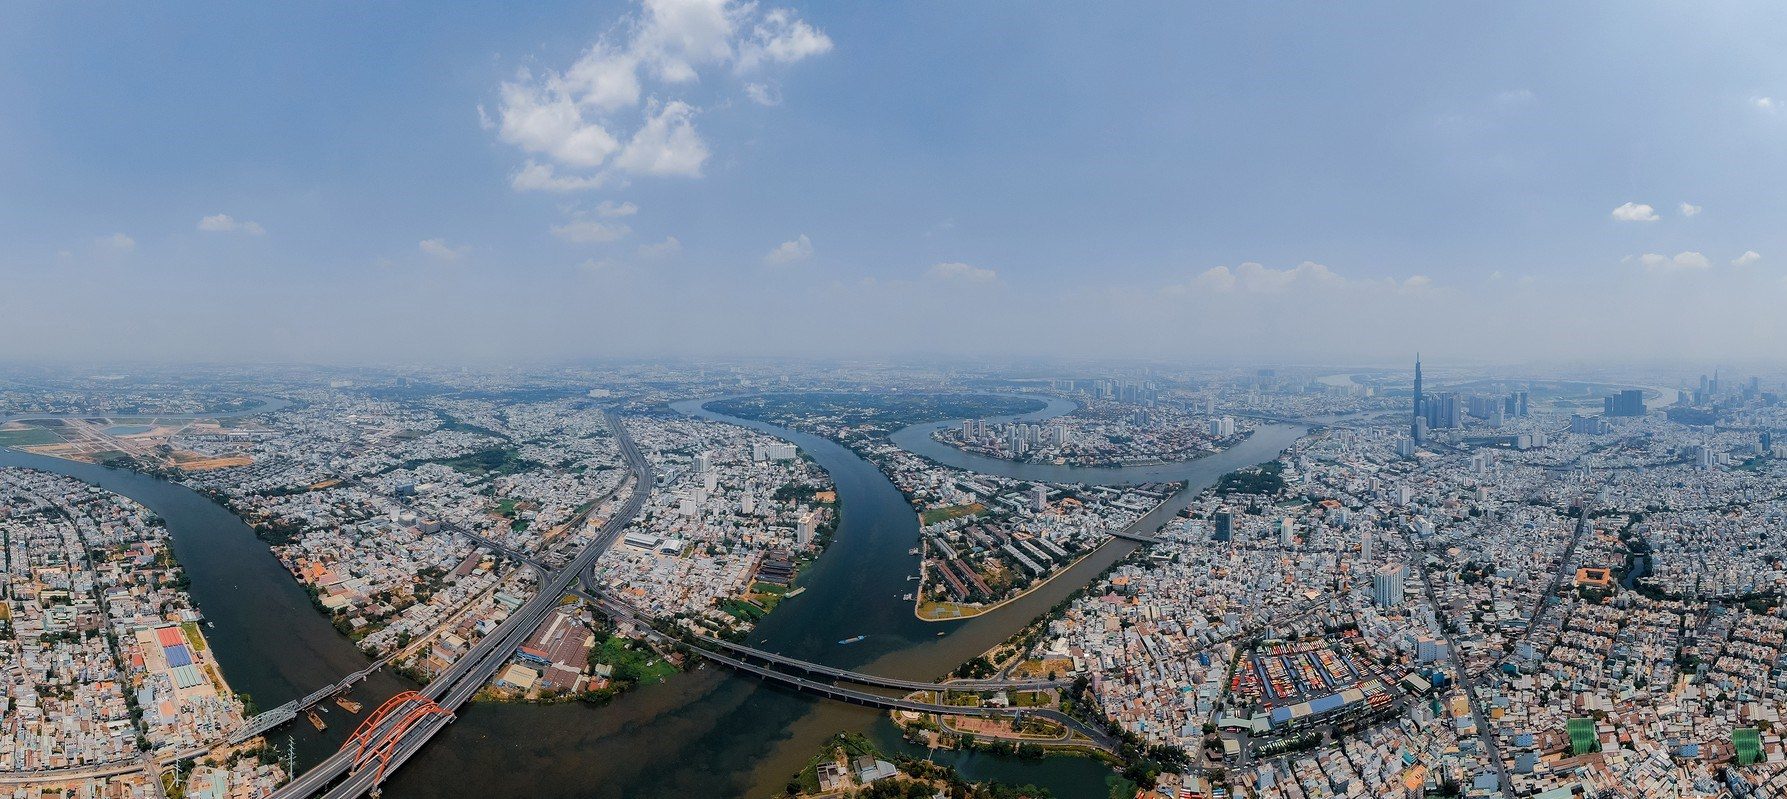 Giá nhà đất tại Thành phố Hồ Chí Minh hiện đang ở mức cao kỷ lục. 